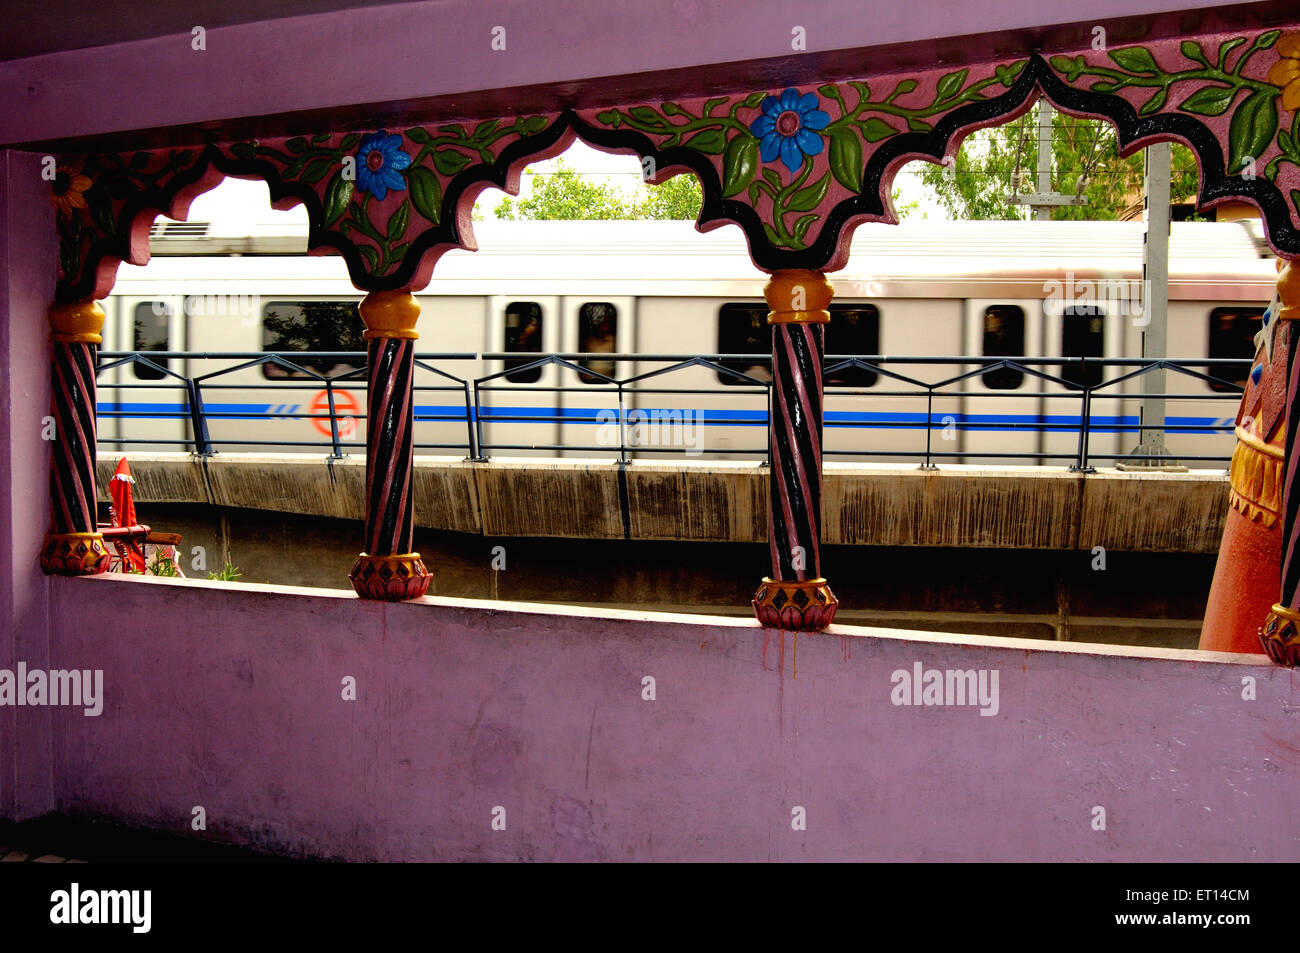 El tren del metro visto desde el interior del templo de Hanuman panchkuan carretera ; Nueva Delhi India ; Foto de stock